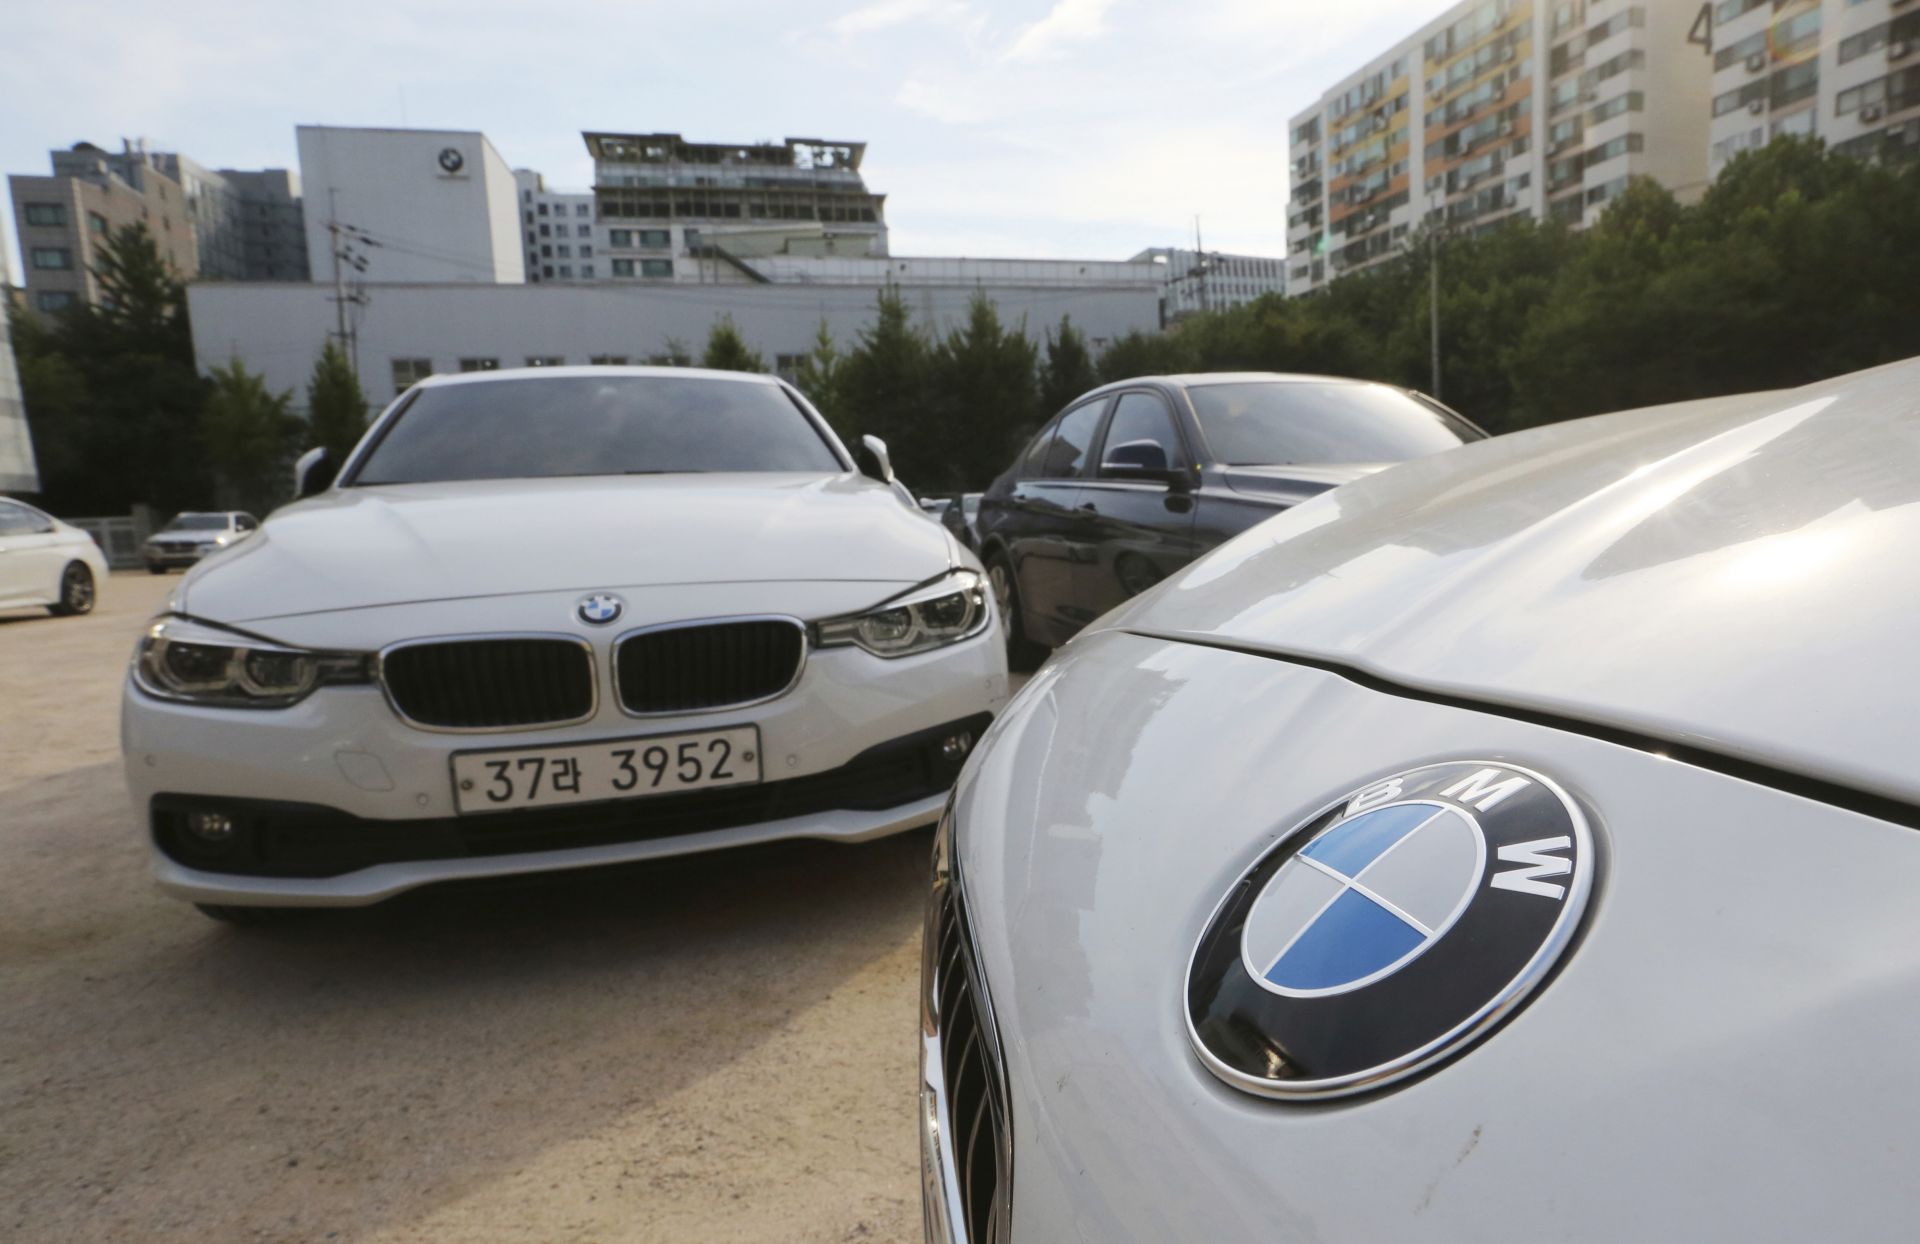 Германската прокуратура съобщи в понеделник, че е наложила на BMW глоба в размер на 8,5 милиона евро